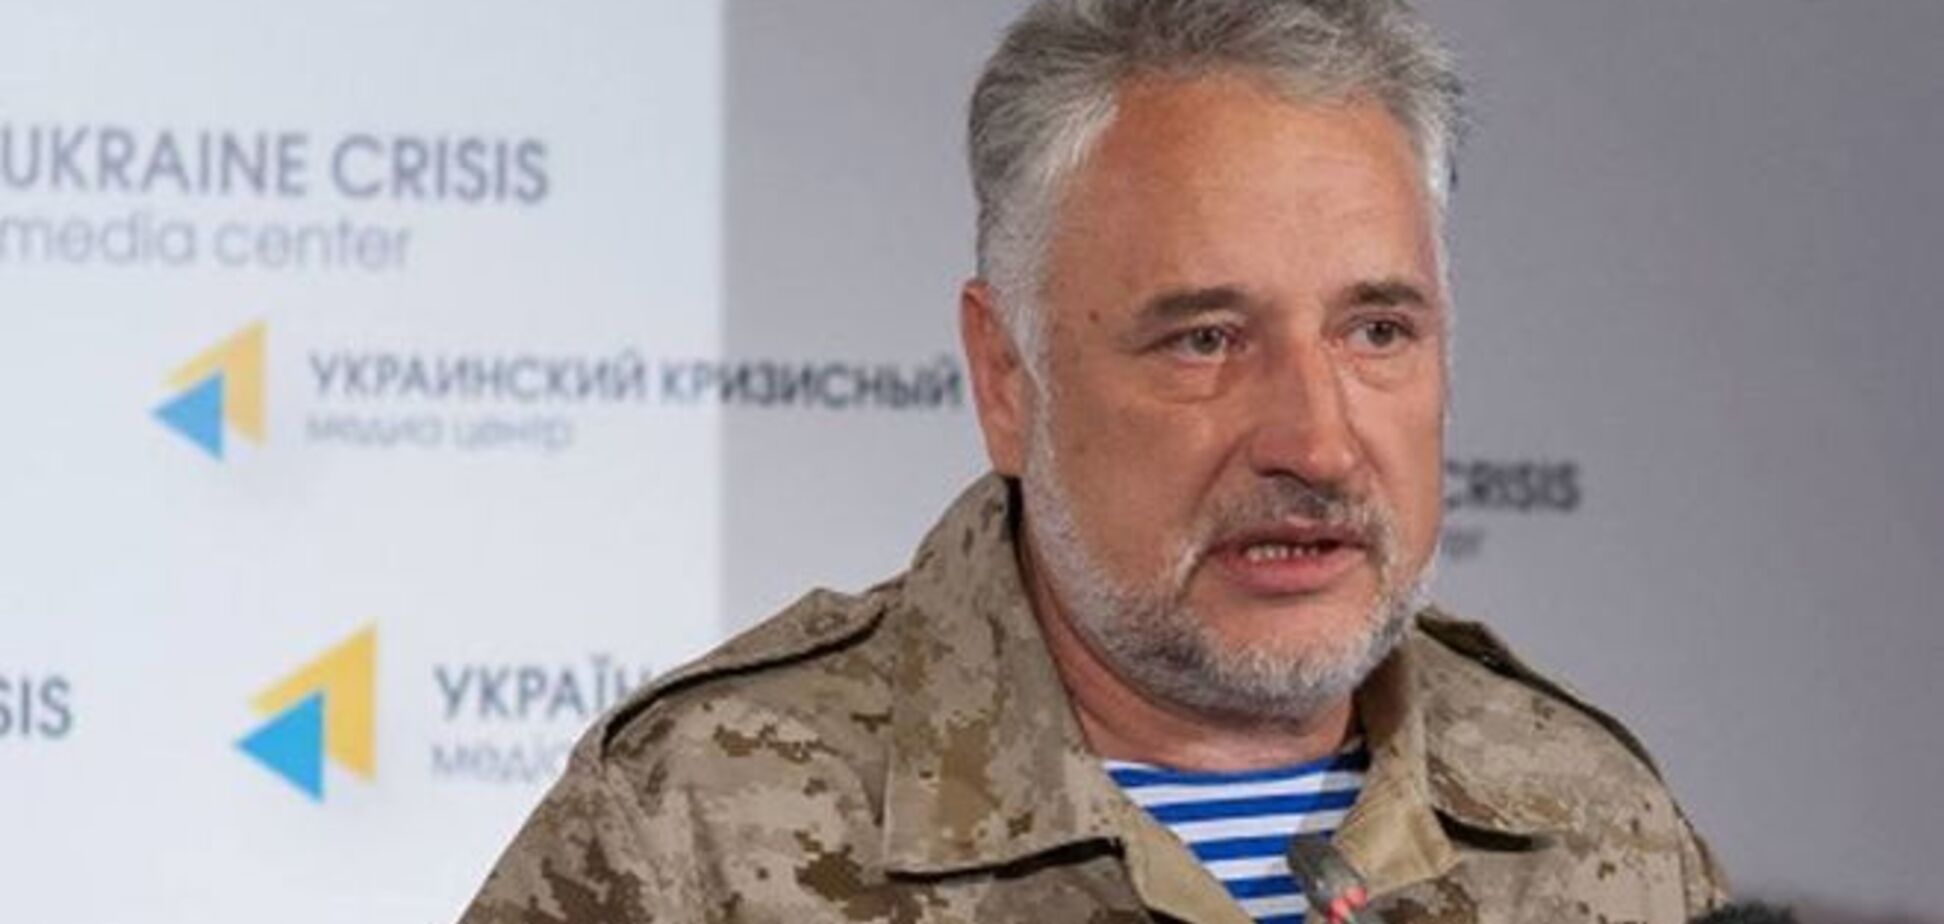 Жебривский рассказал, как миротворцы могут спасти Донбасс